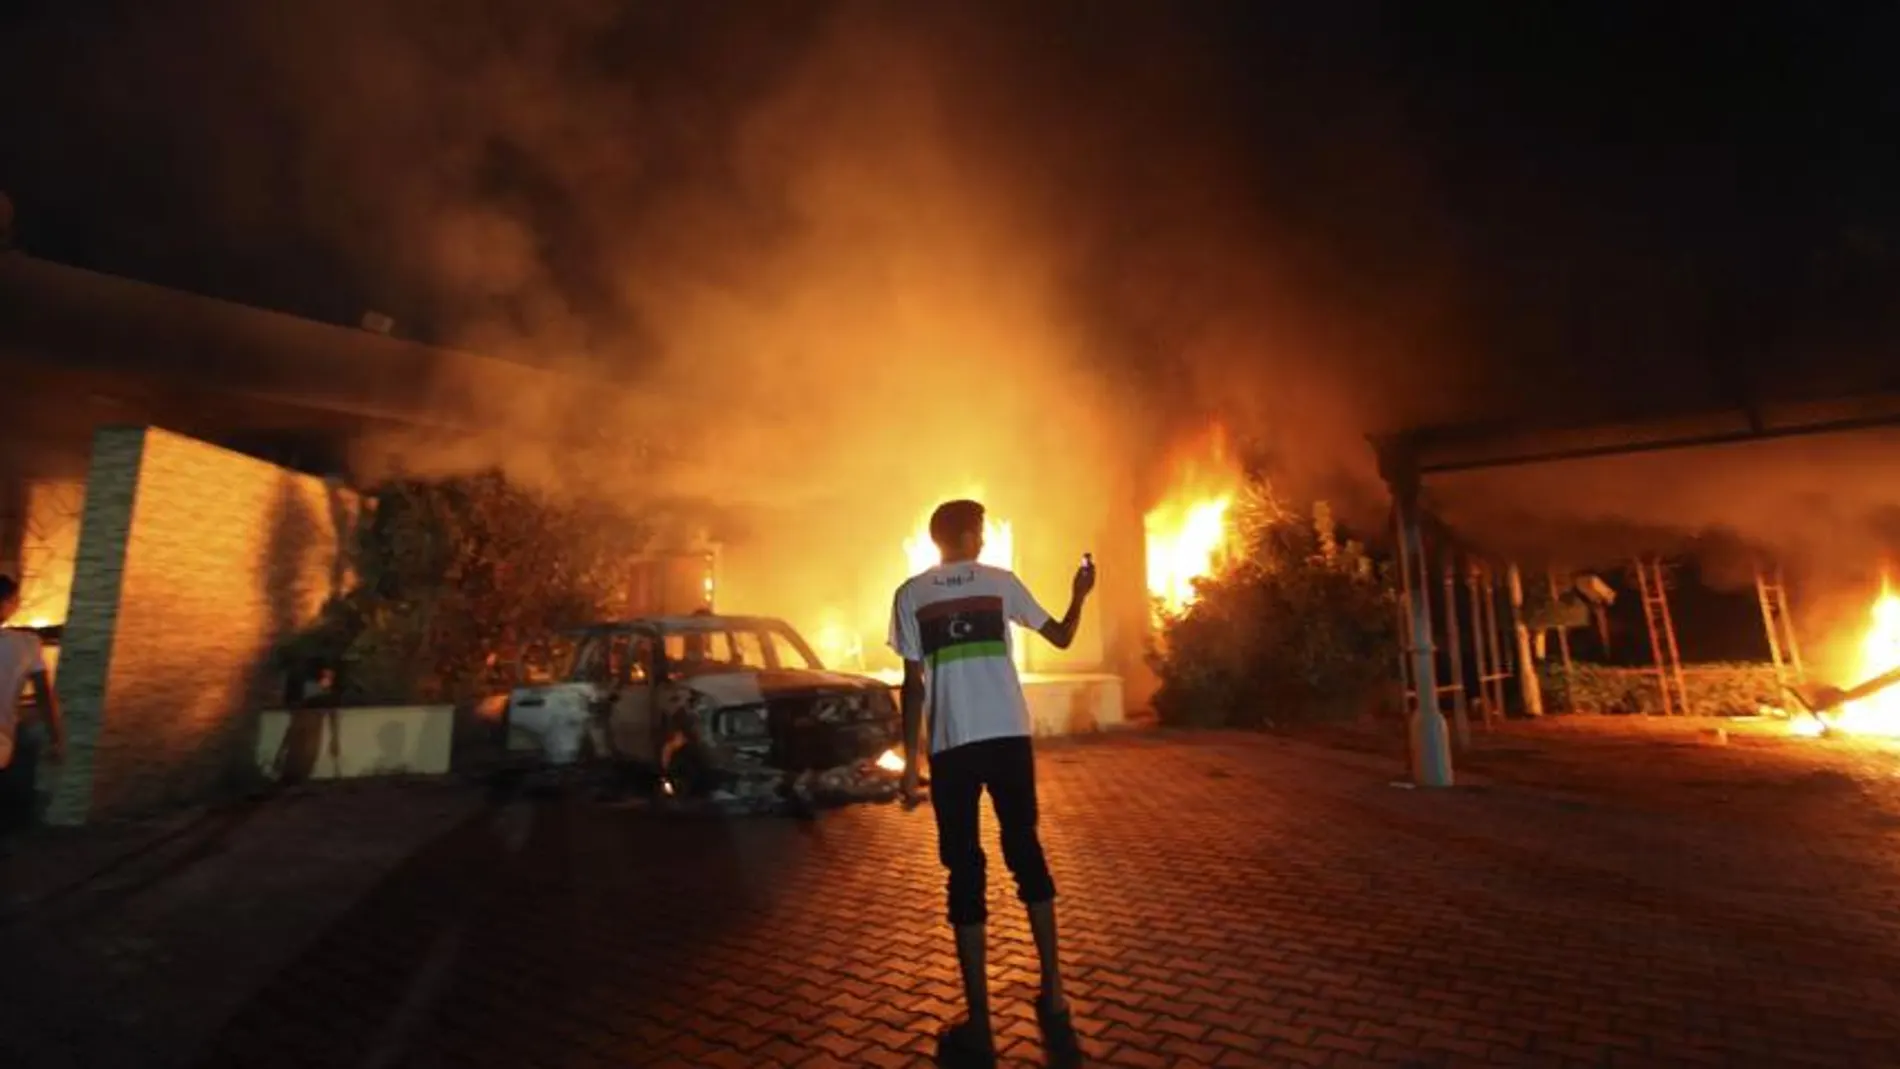 El consulado de Estados Unidos en Bengasi (Libia) en llamas, tras el ataque de septiembre de 2012.